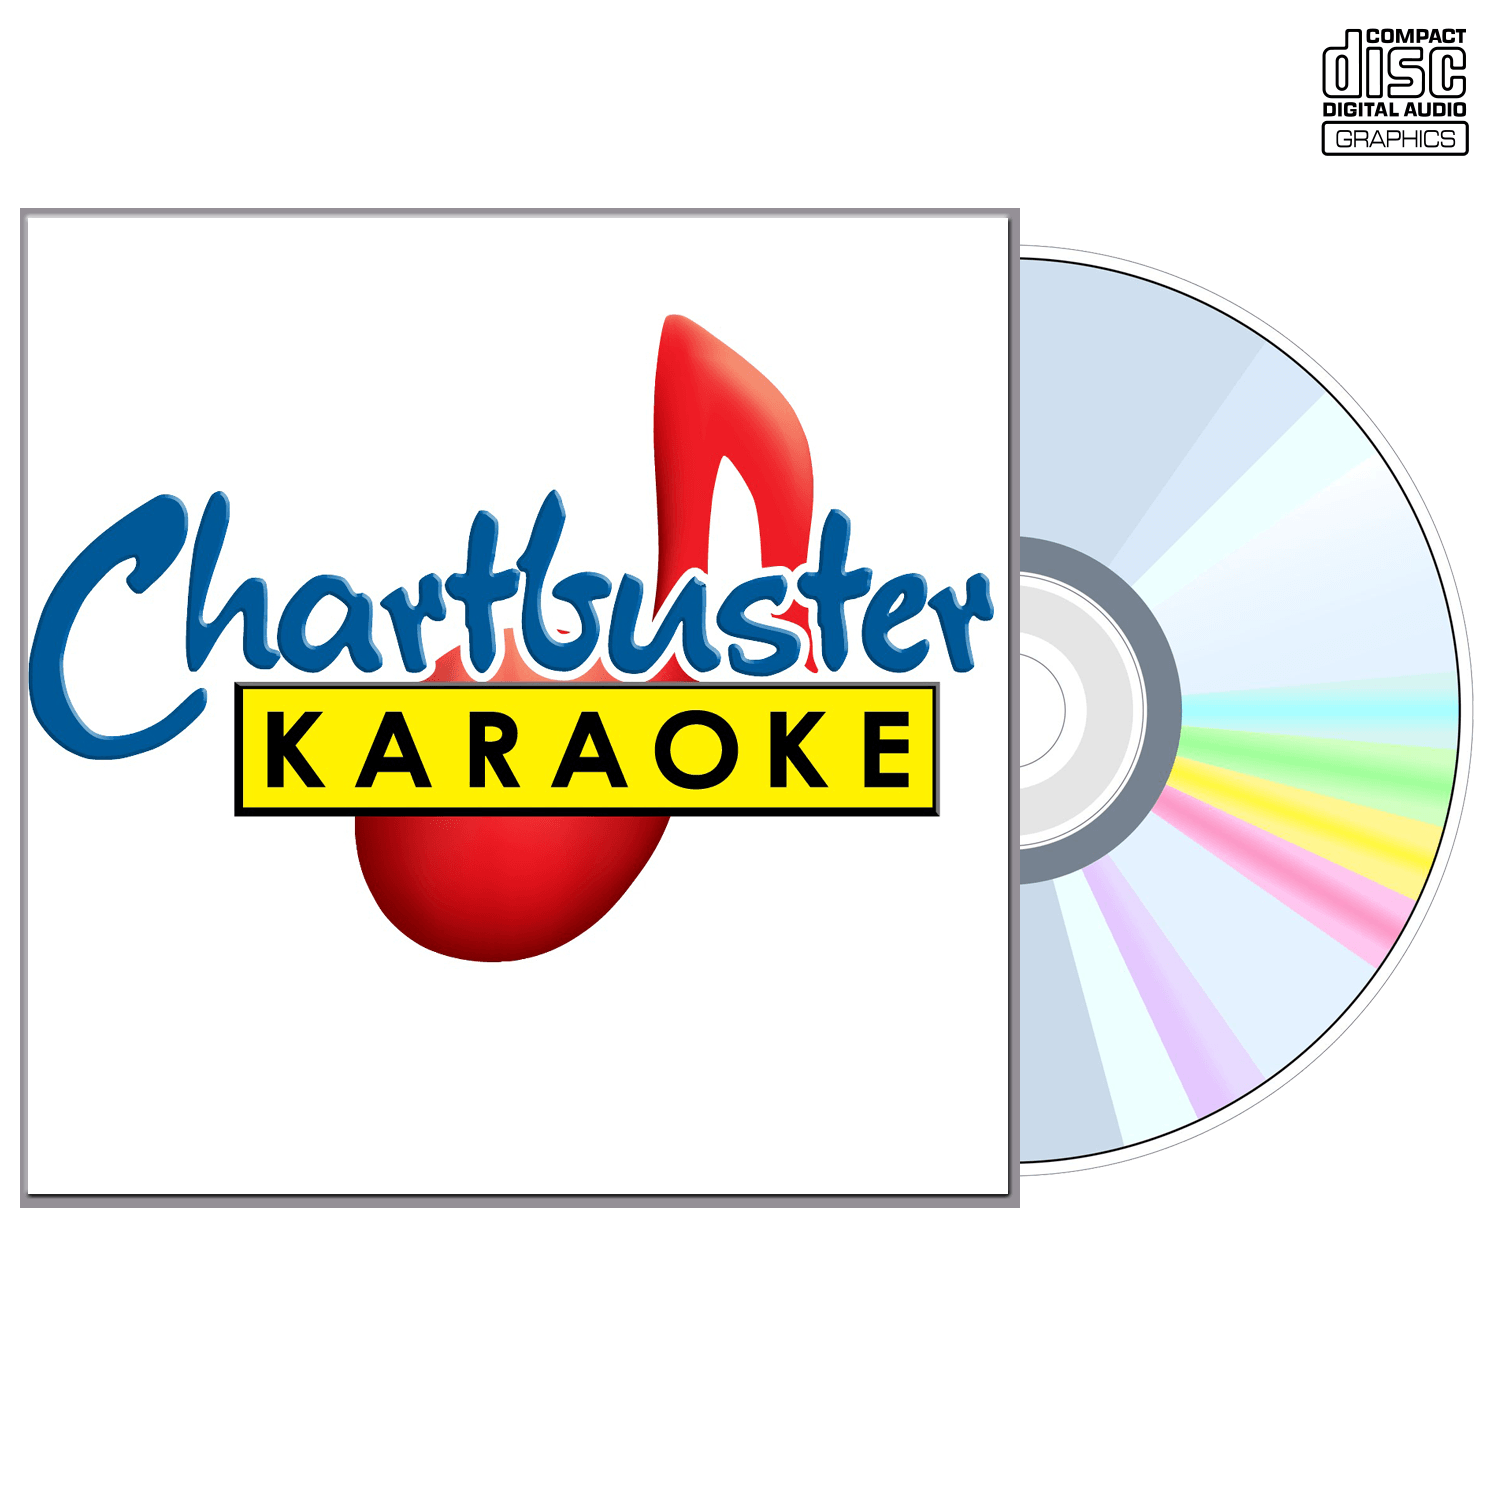 Lee Brice - CD+G - Chartbuster Karaoke - Karaoke Home Entertainment